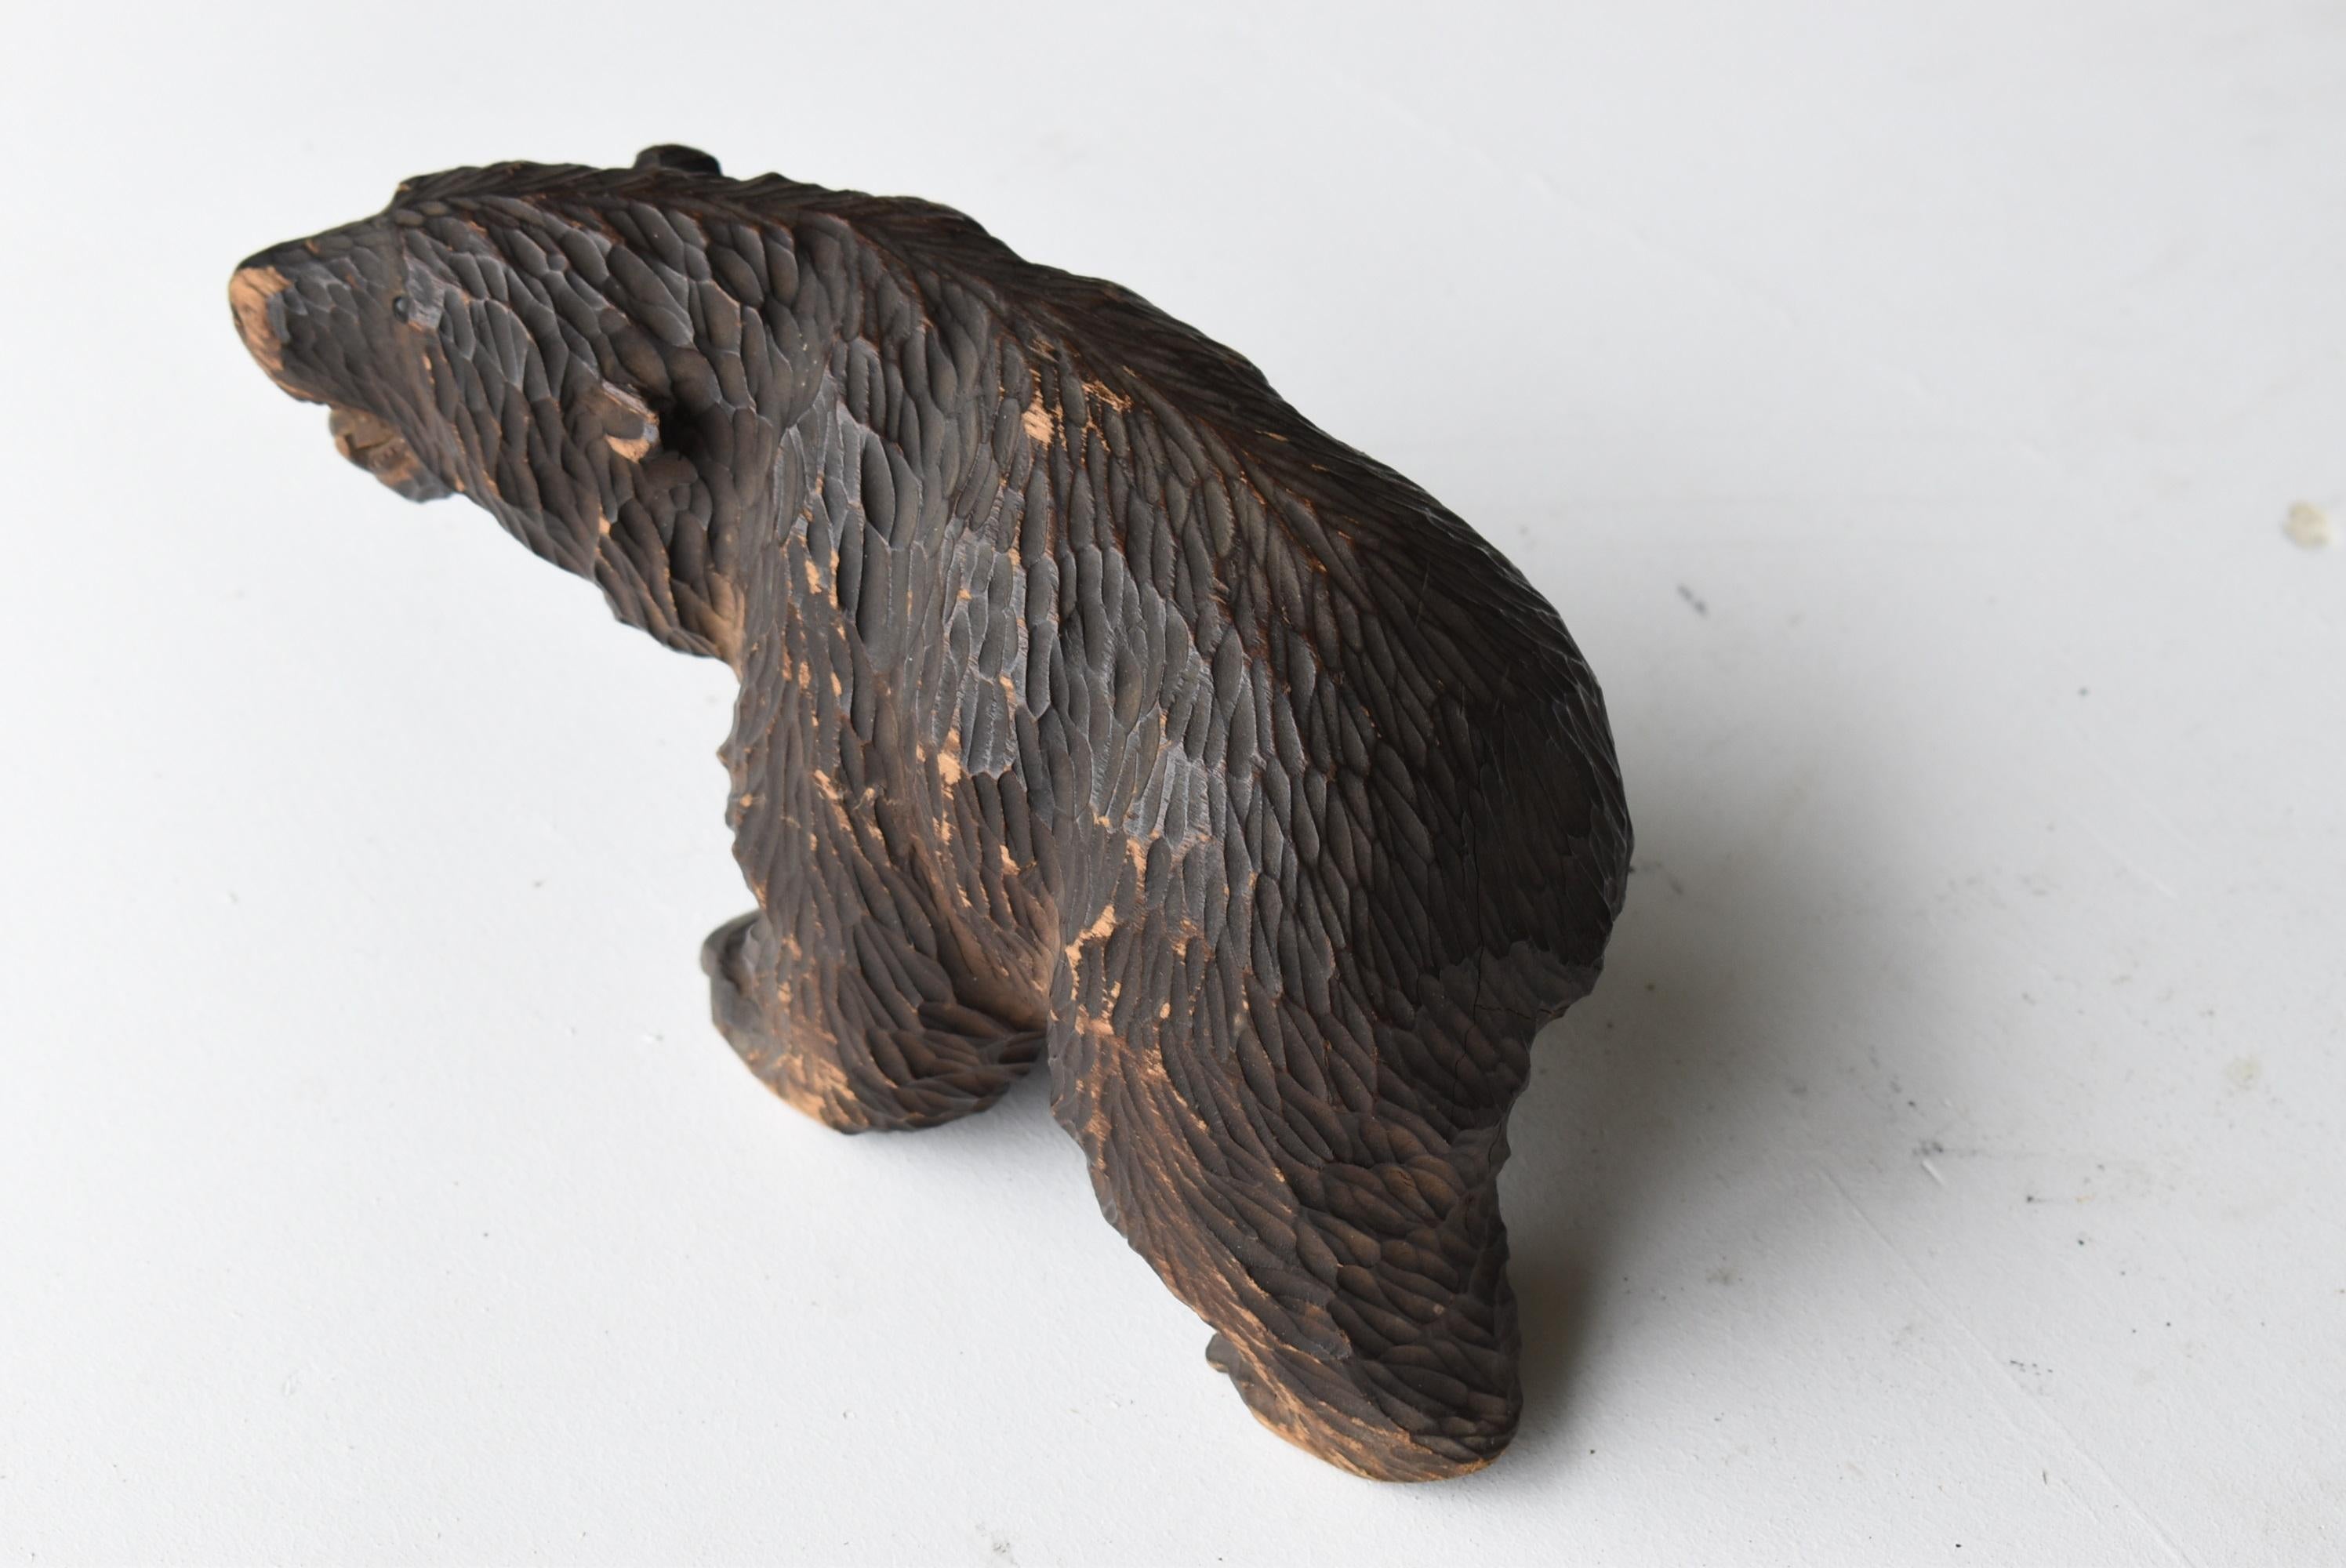 Japanese Old Wood Carving Bear 1930s-1950s/Vintage Figurine Sculpture Folk Art For Sale 3